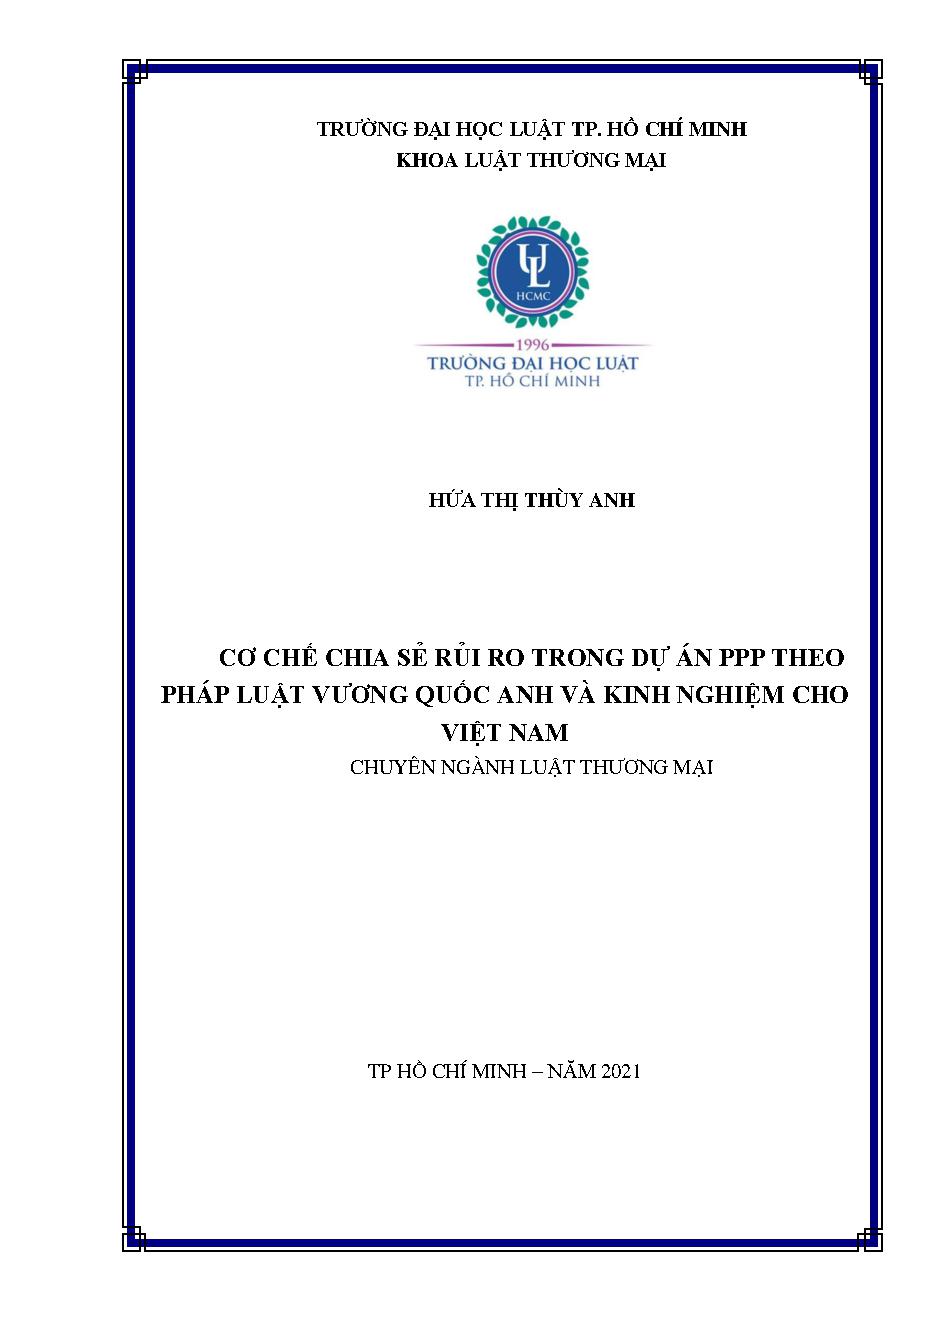 Cơ chế chia sẻ rủi ro trong dự án PPP theo pháp luật Vương quốc Anh và kinh nghiệm cho Việt Nam